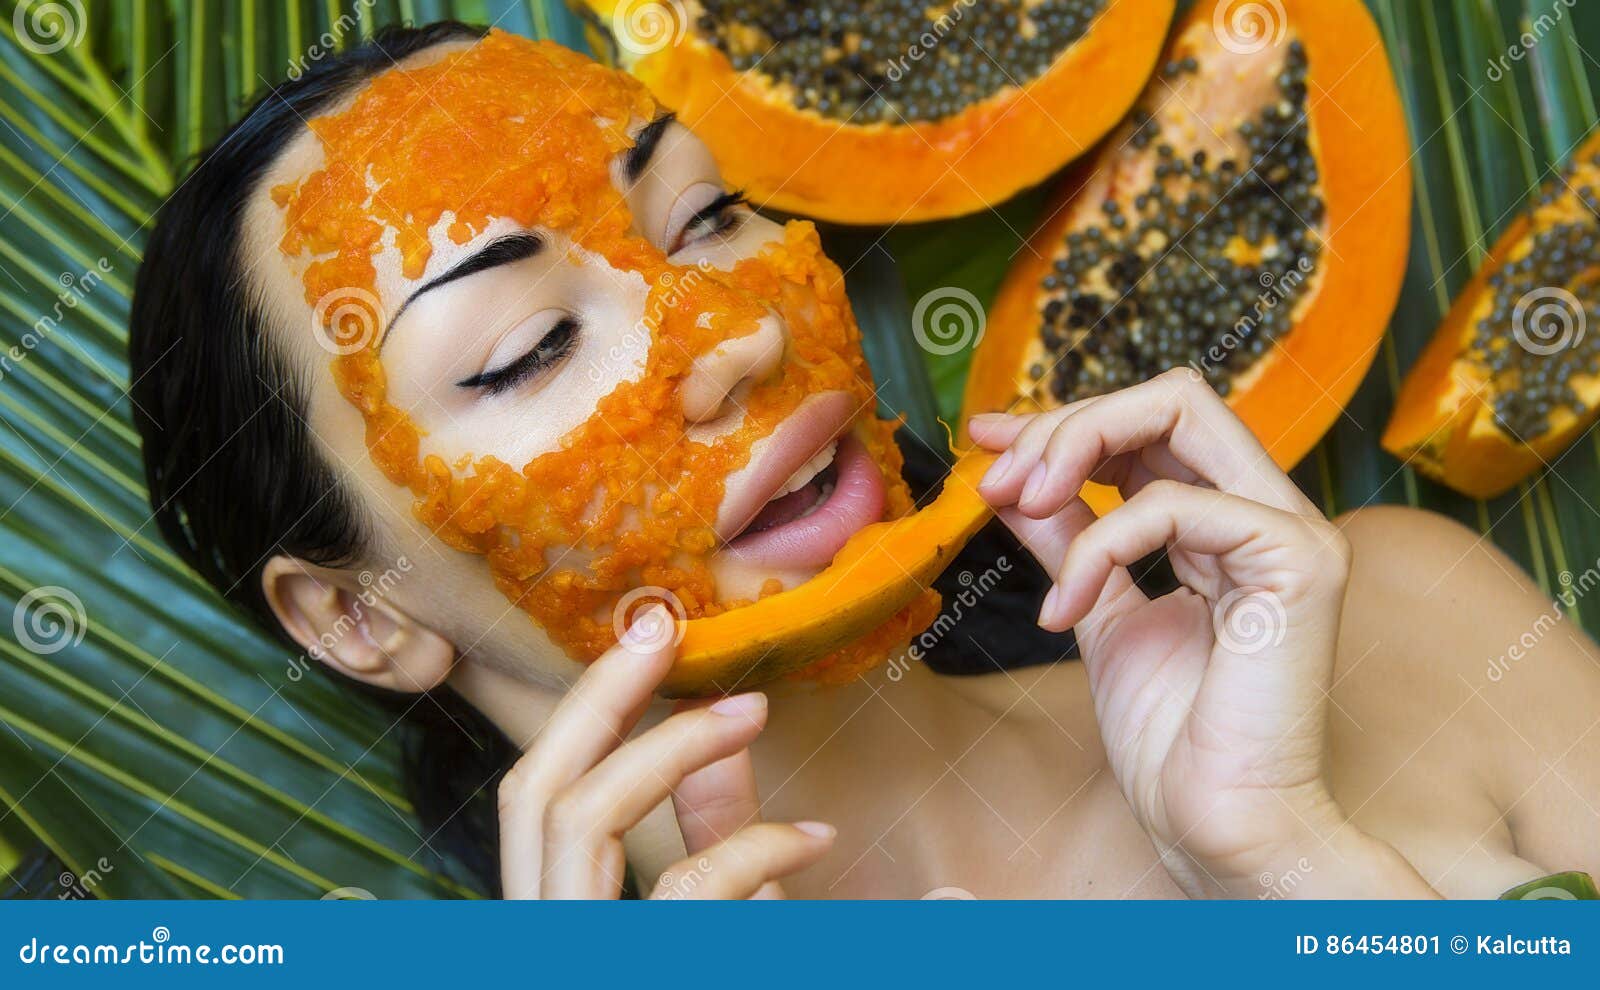 203 Papaya Facial Mask Stock Photos